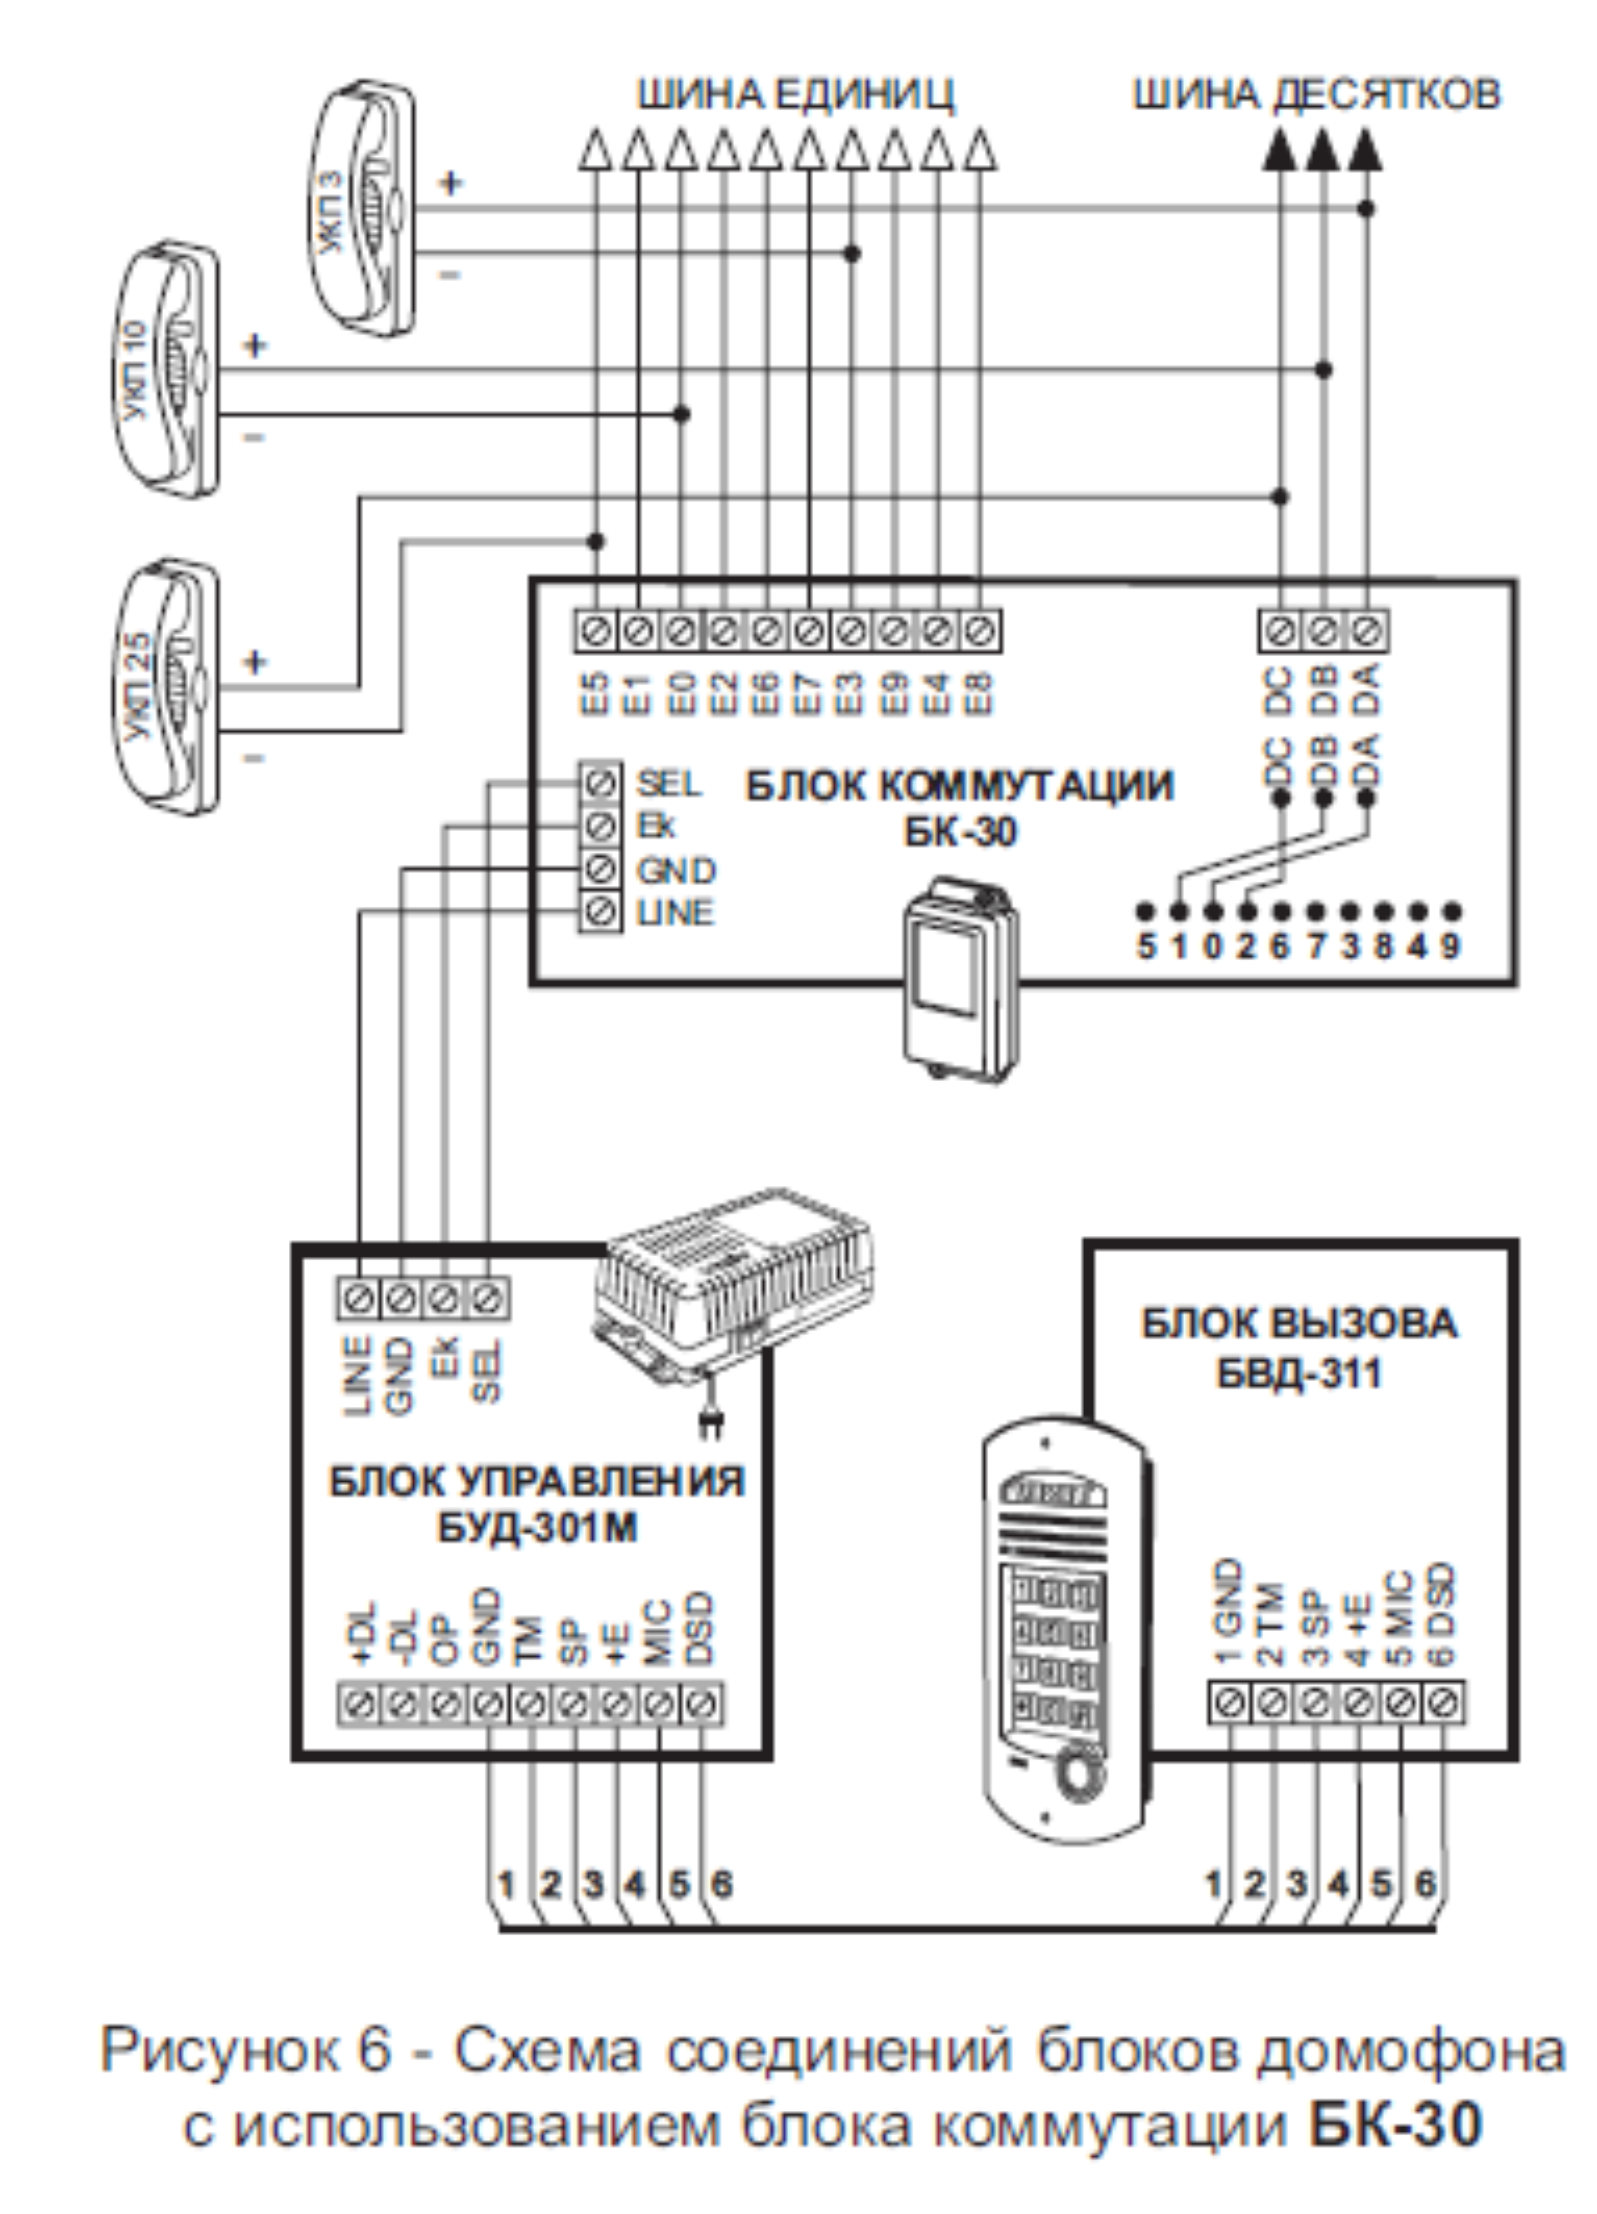 Схема соединений блоков домофона с использованием блока коммутации БК-30